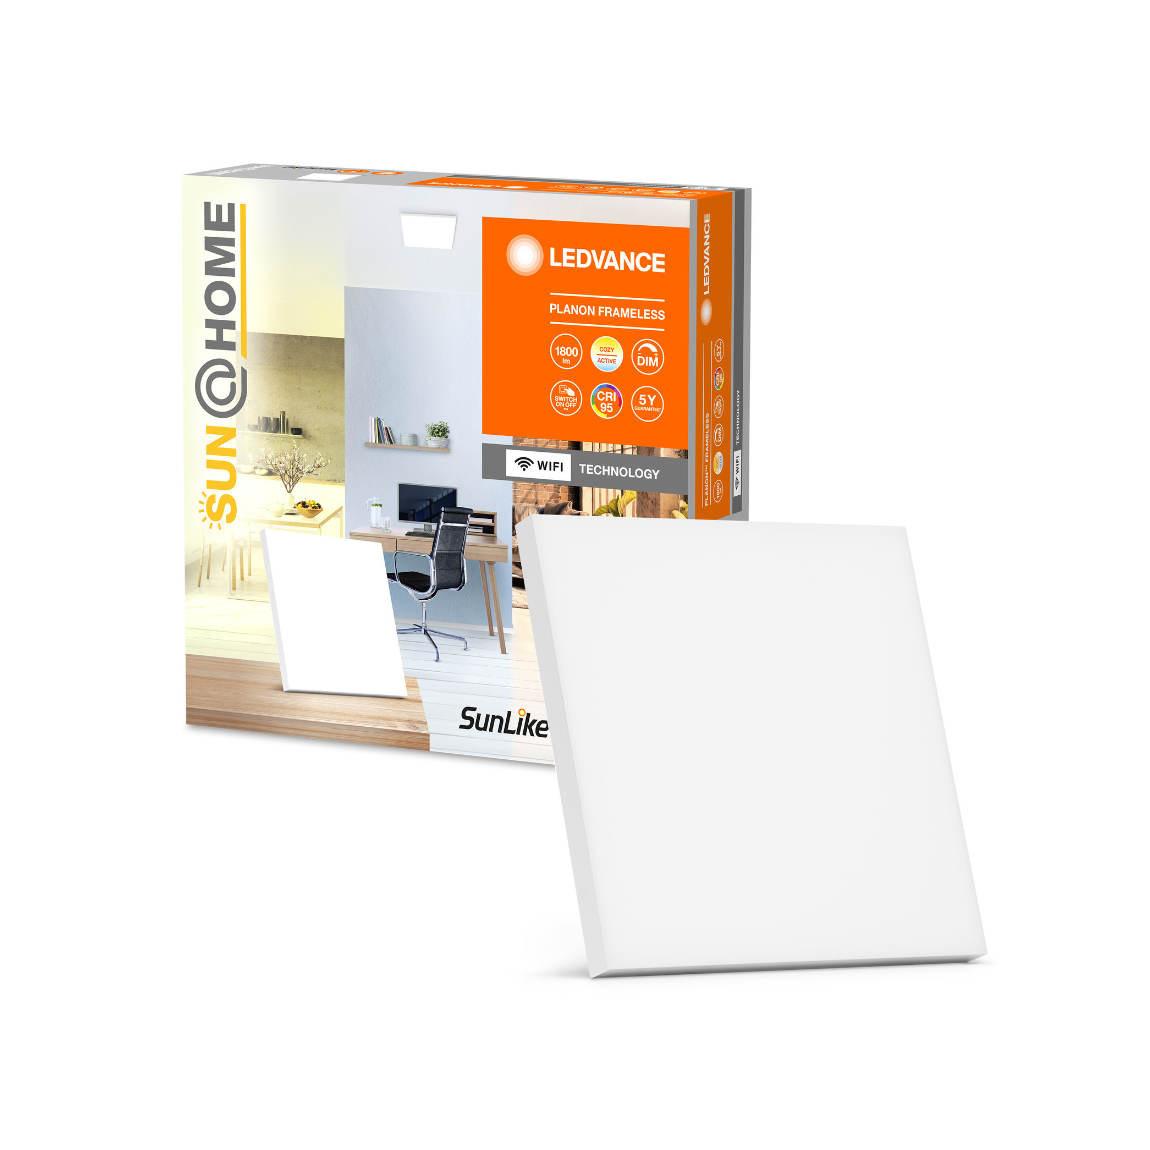 Ledvance Sun@Home SMART+ Planon Frameless 300x300 WiFi Warm- und Kaltweiß_Verpackung mit Lampe